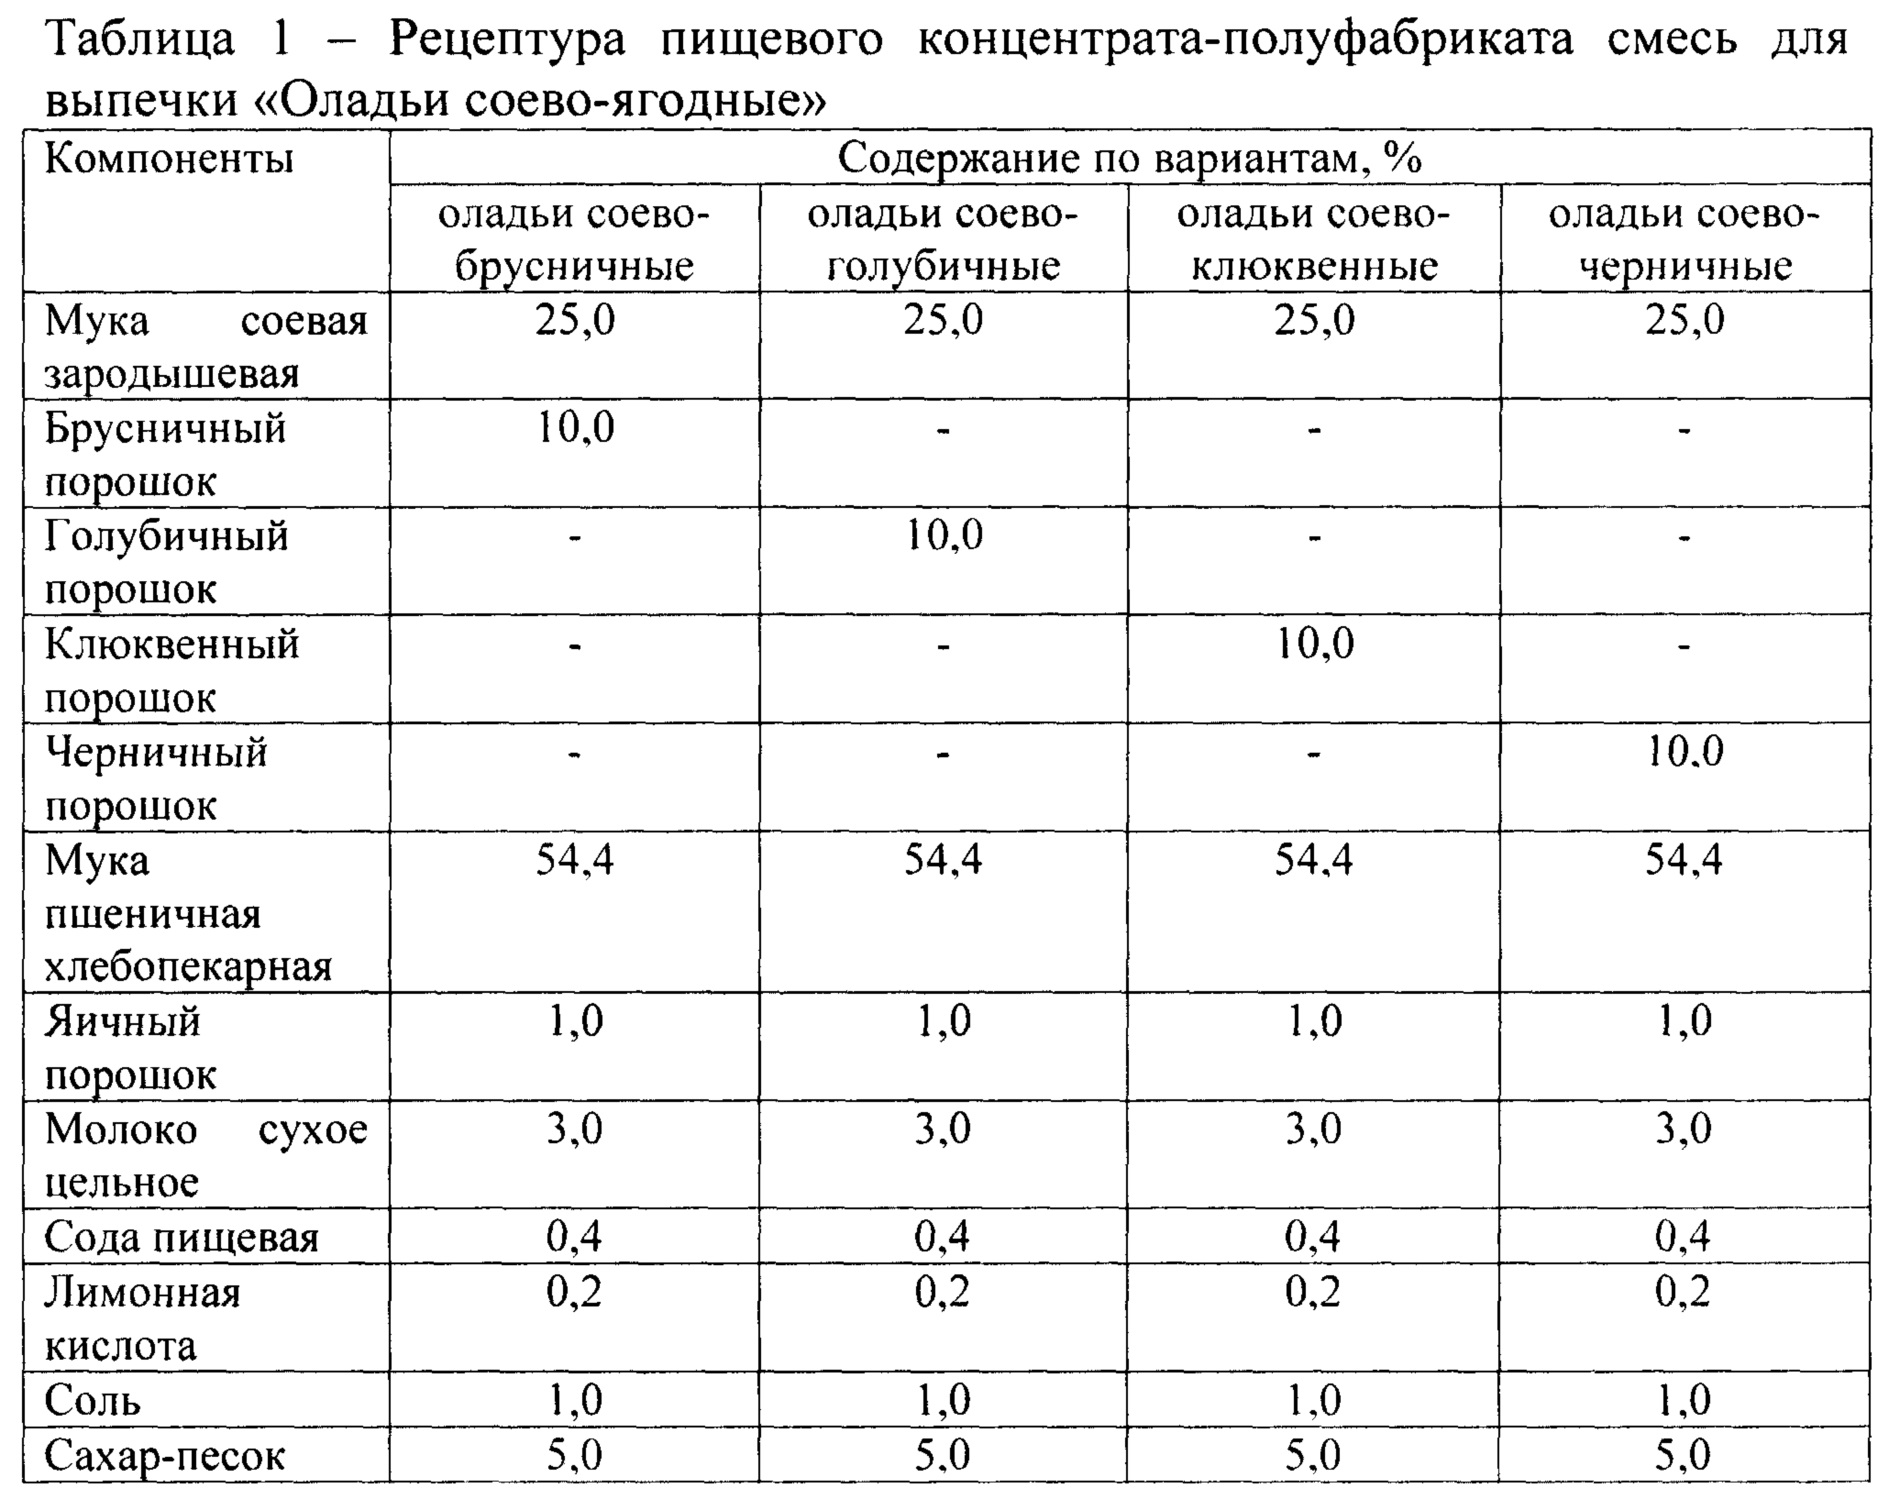 Соотношение соды и разрыхлителя в выпечке таблица